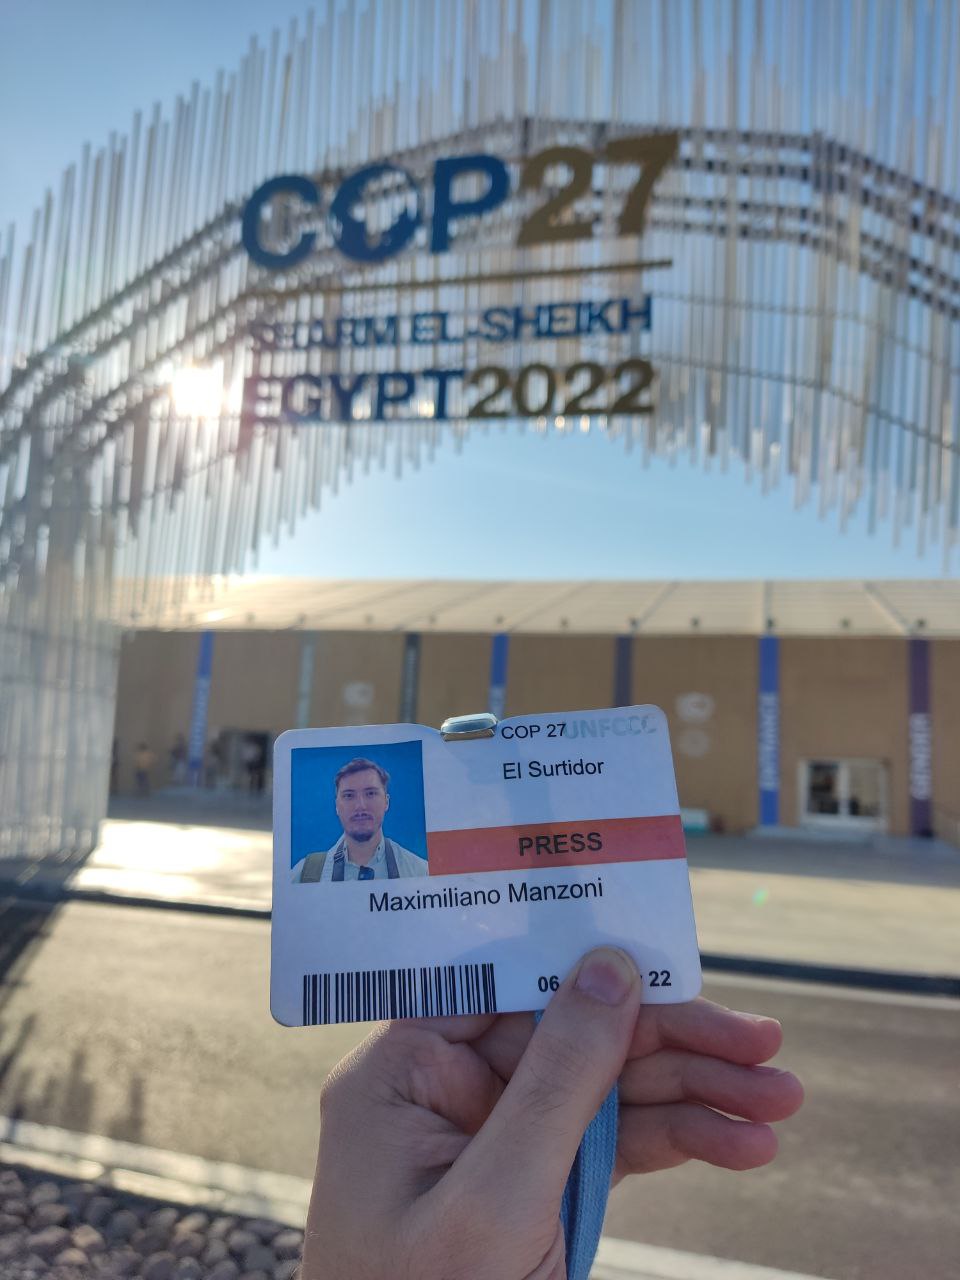 Maximiliano Manzoni press badge at COP27